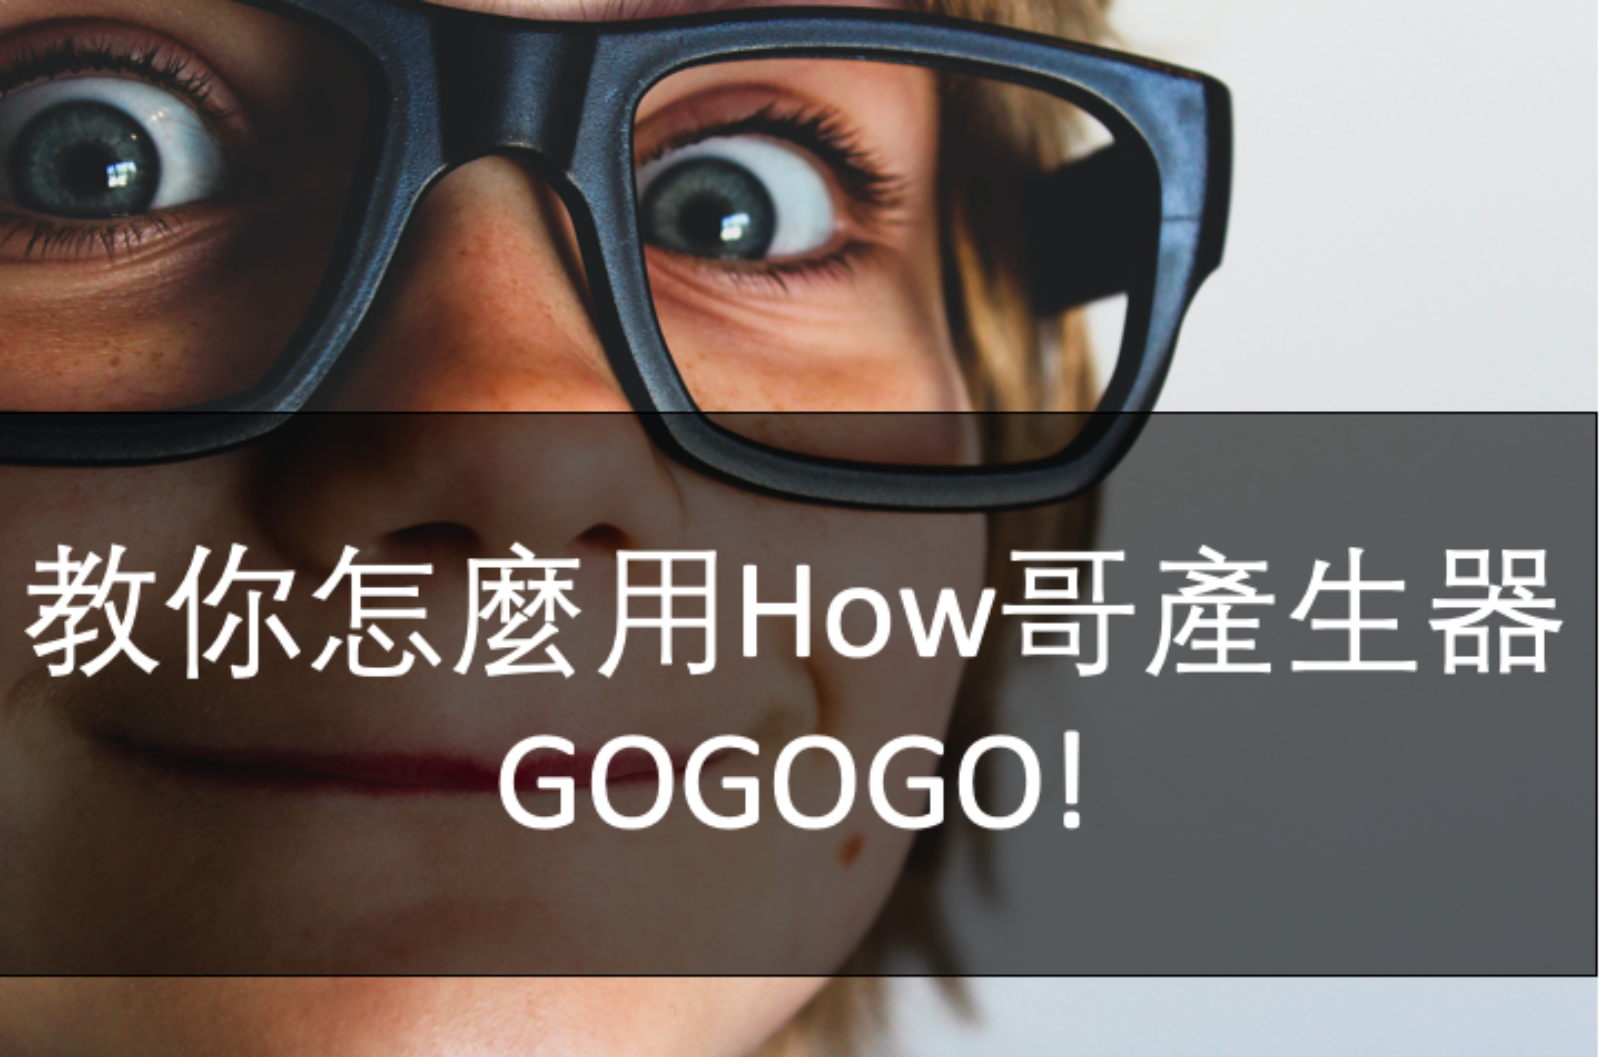 教你怎麼用How哥產生器 gogogo！